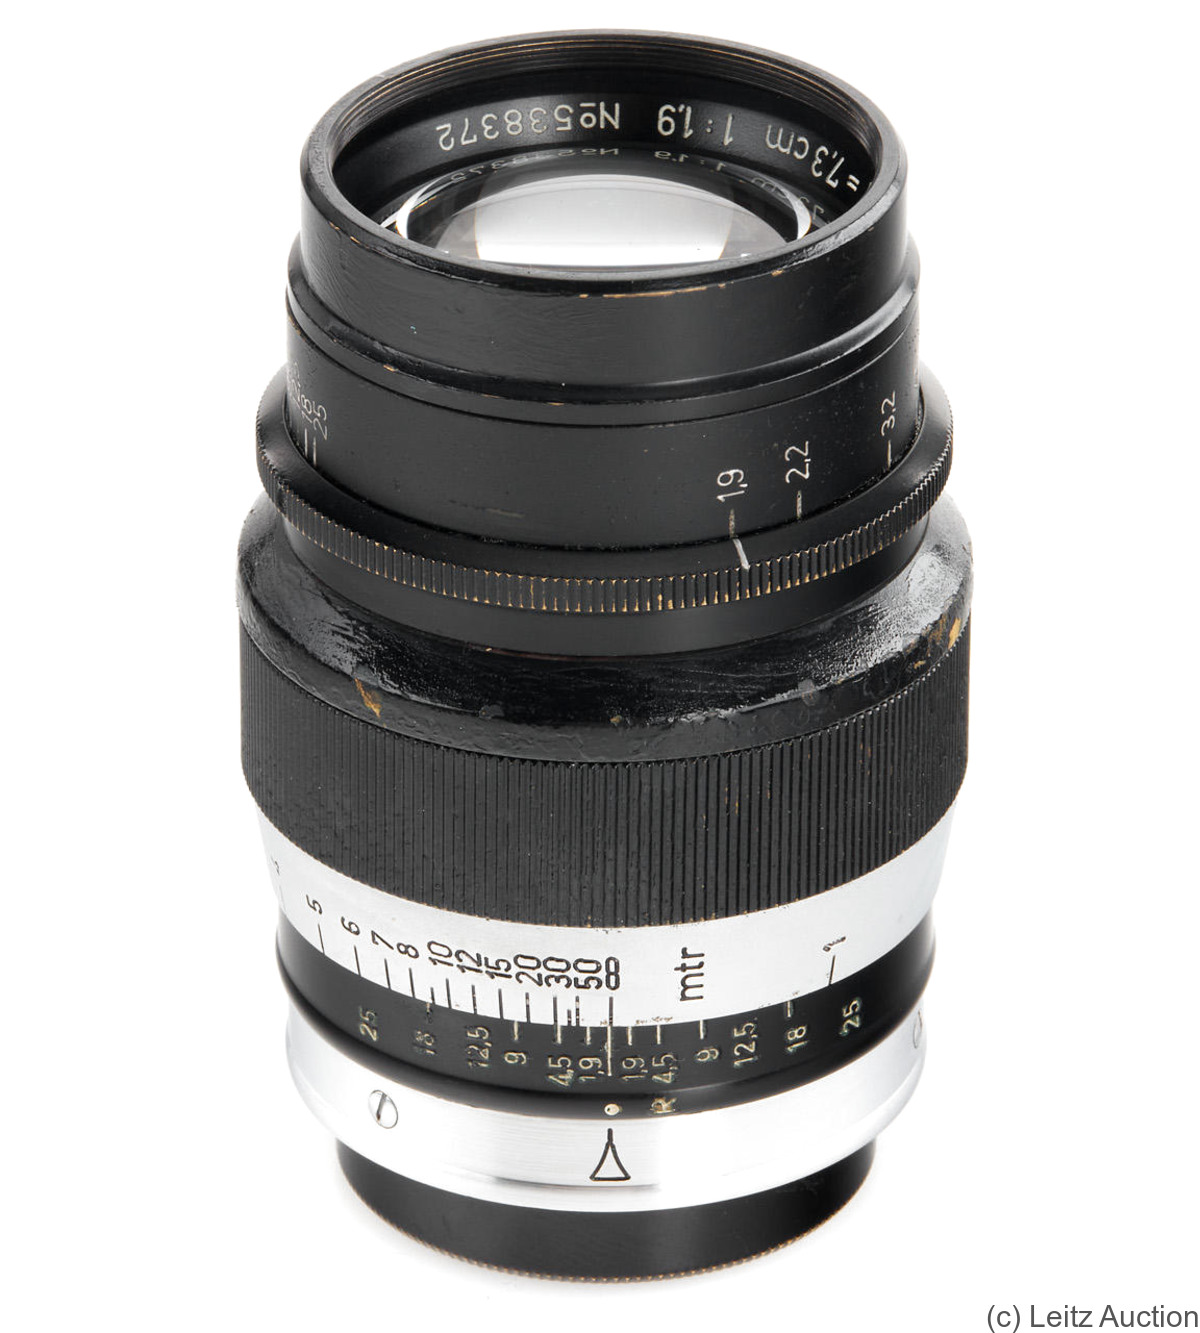 Leitz: 73mm (7.3cm) f1.9 Hektor (SM, black/chrome) camera